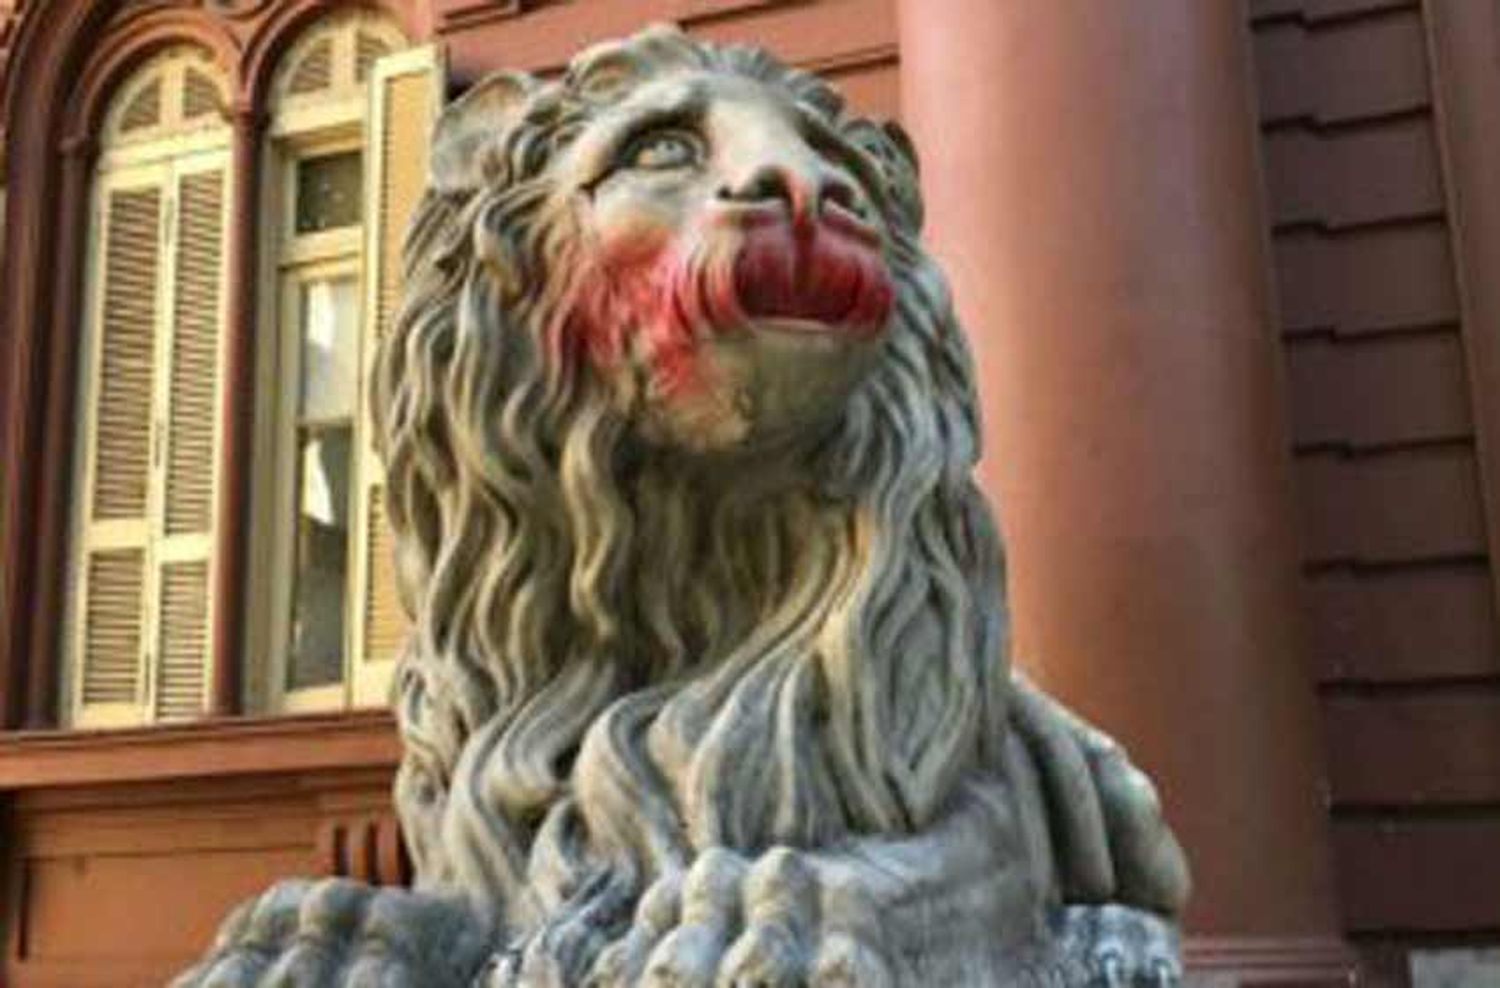 Acto de vandalismo en las estatuas de la Municipalidad